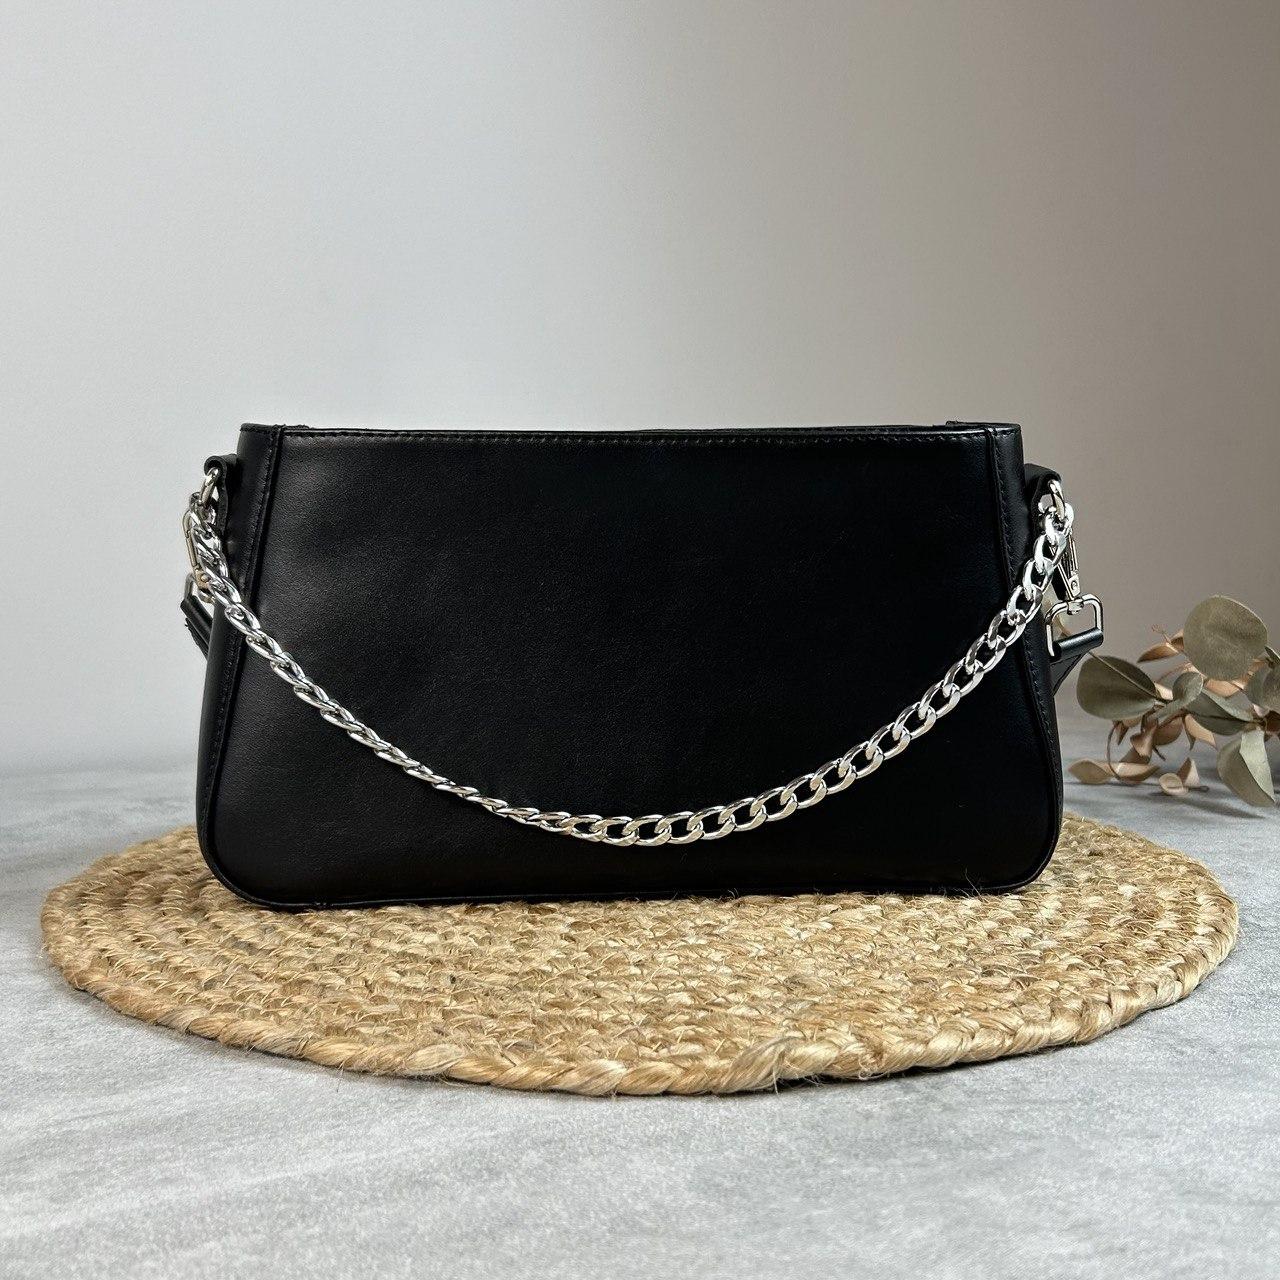 Жіноча сумочка, стильна сумка з натуральної шкіри, маленька бежова сумка клач